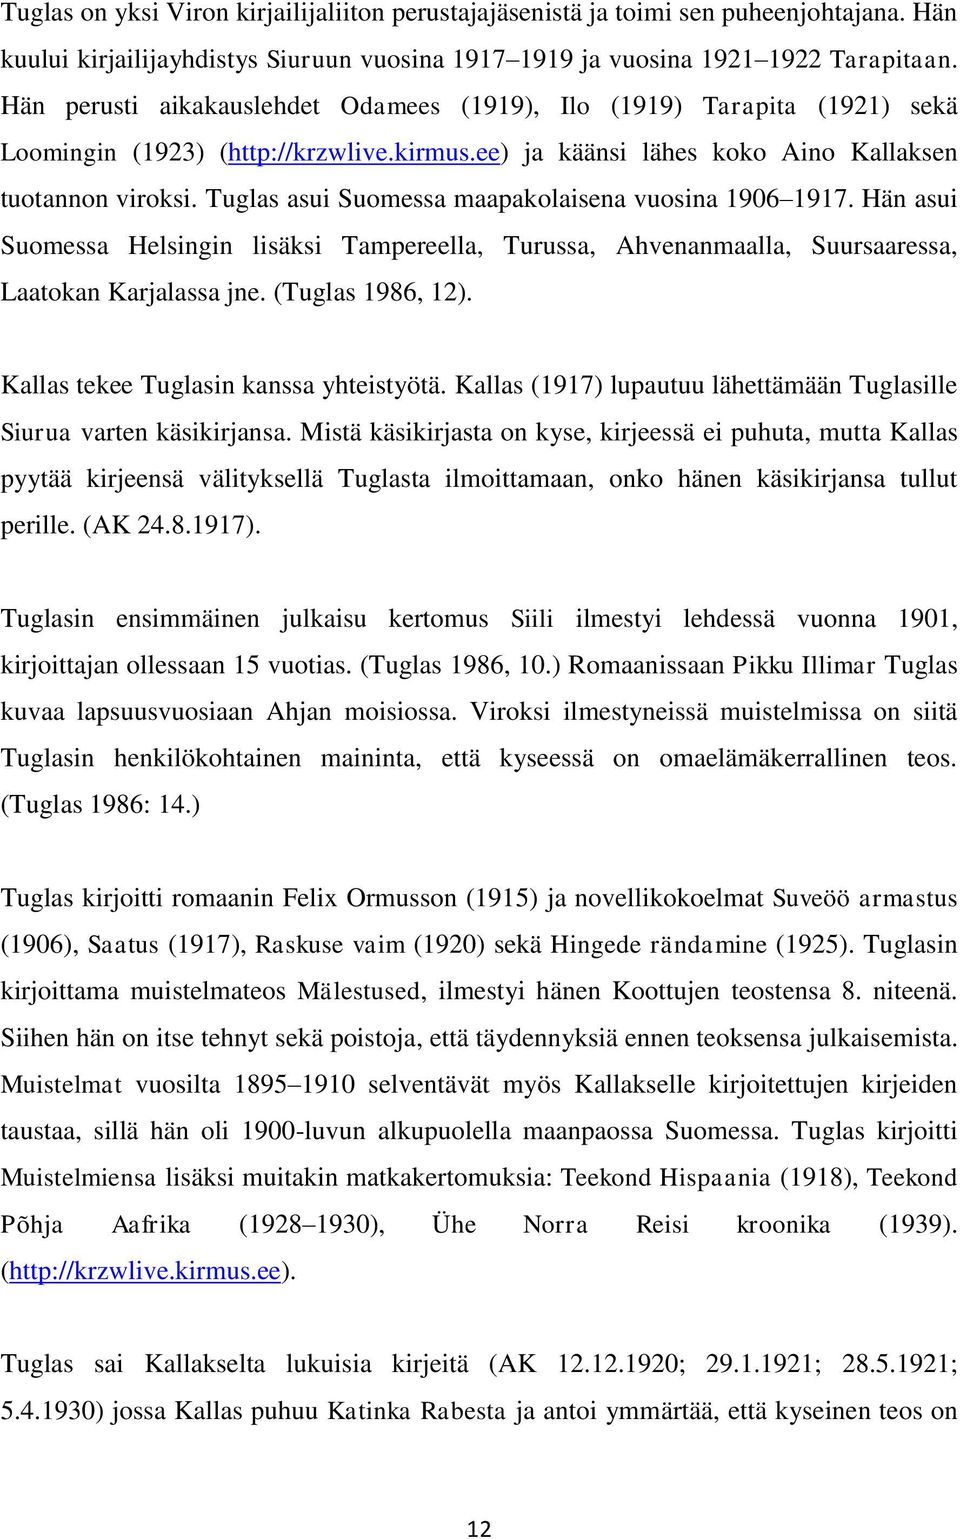 Tuglas asui Suomessa maapakolaisena vuosina 1906 1917. Hän asui Suomessa Helsingin lisäksi Tampereella, Turussa, Ahvenanmaalla, Suursaaressa, Laatokan Karjalassa jne. (Tuglas 1986, 12).